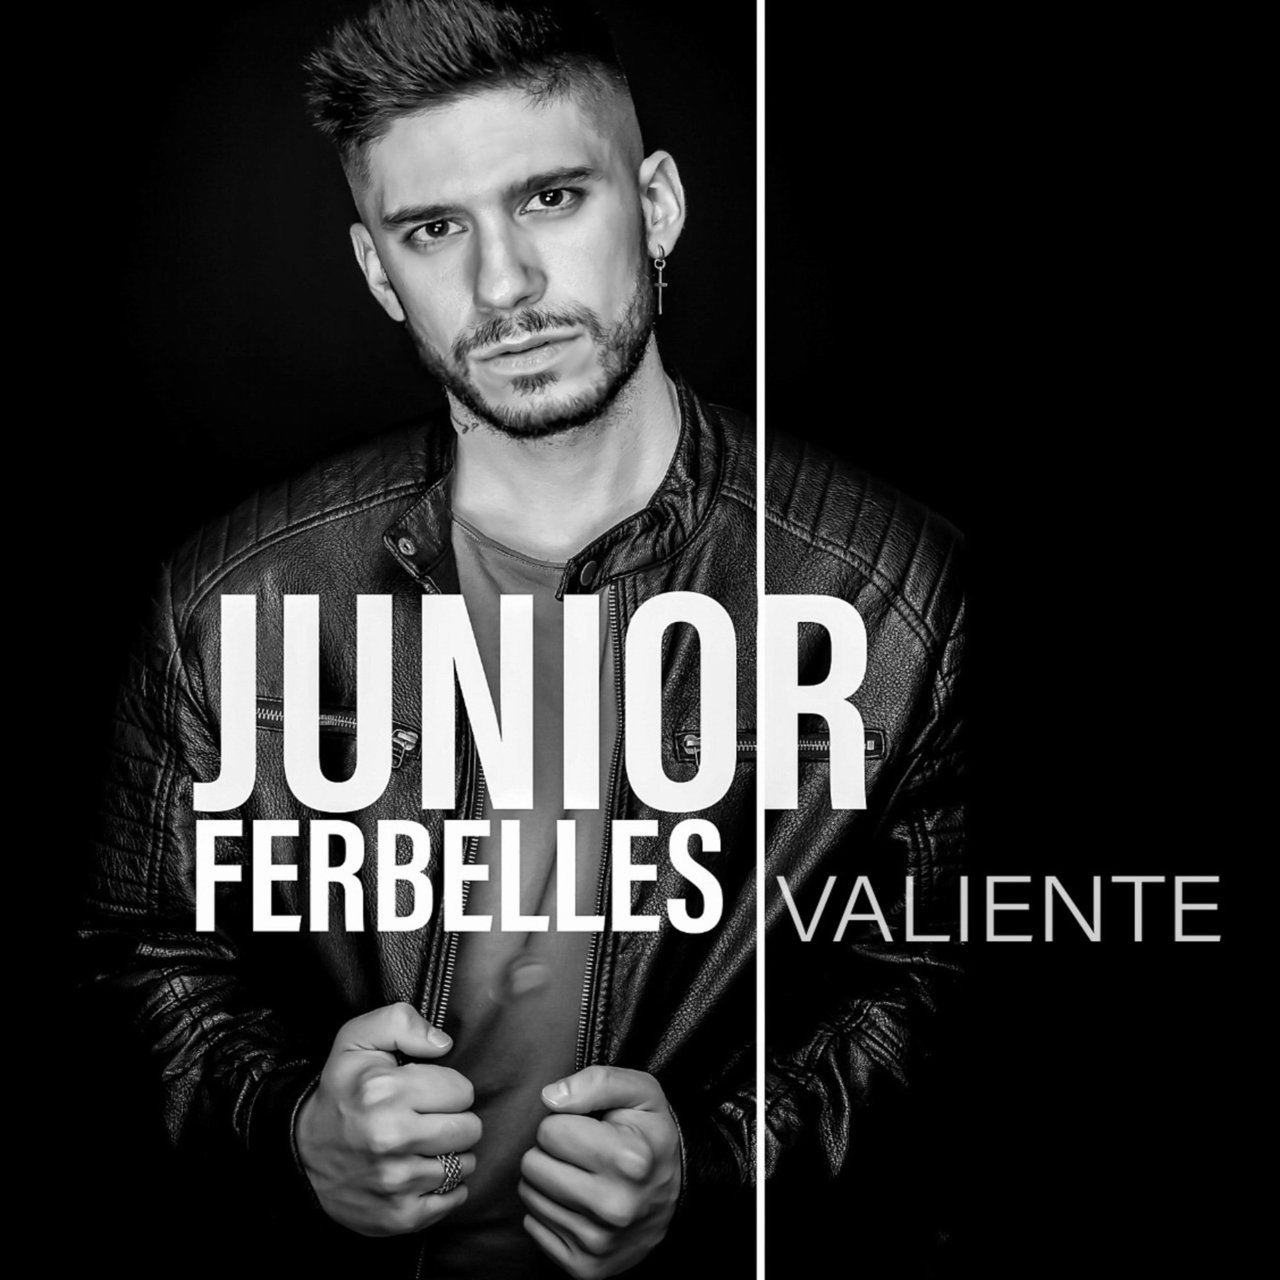 Junior Ferbelles Valiente cover artwork